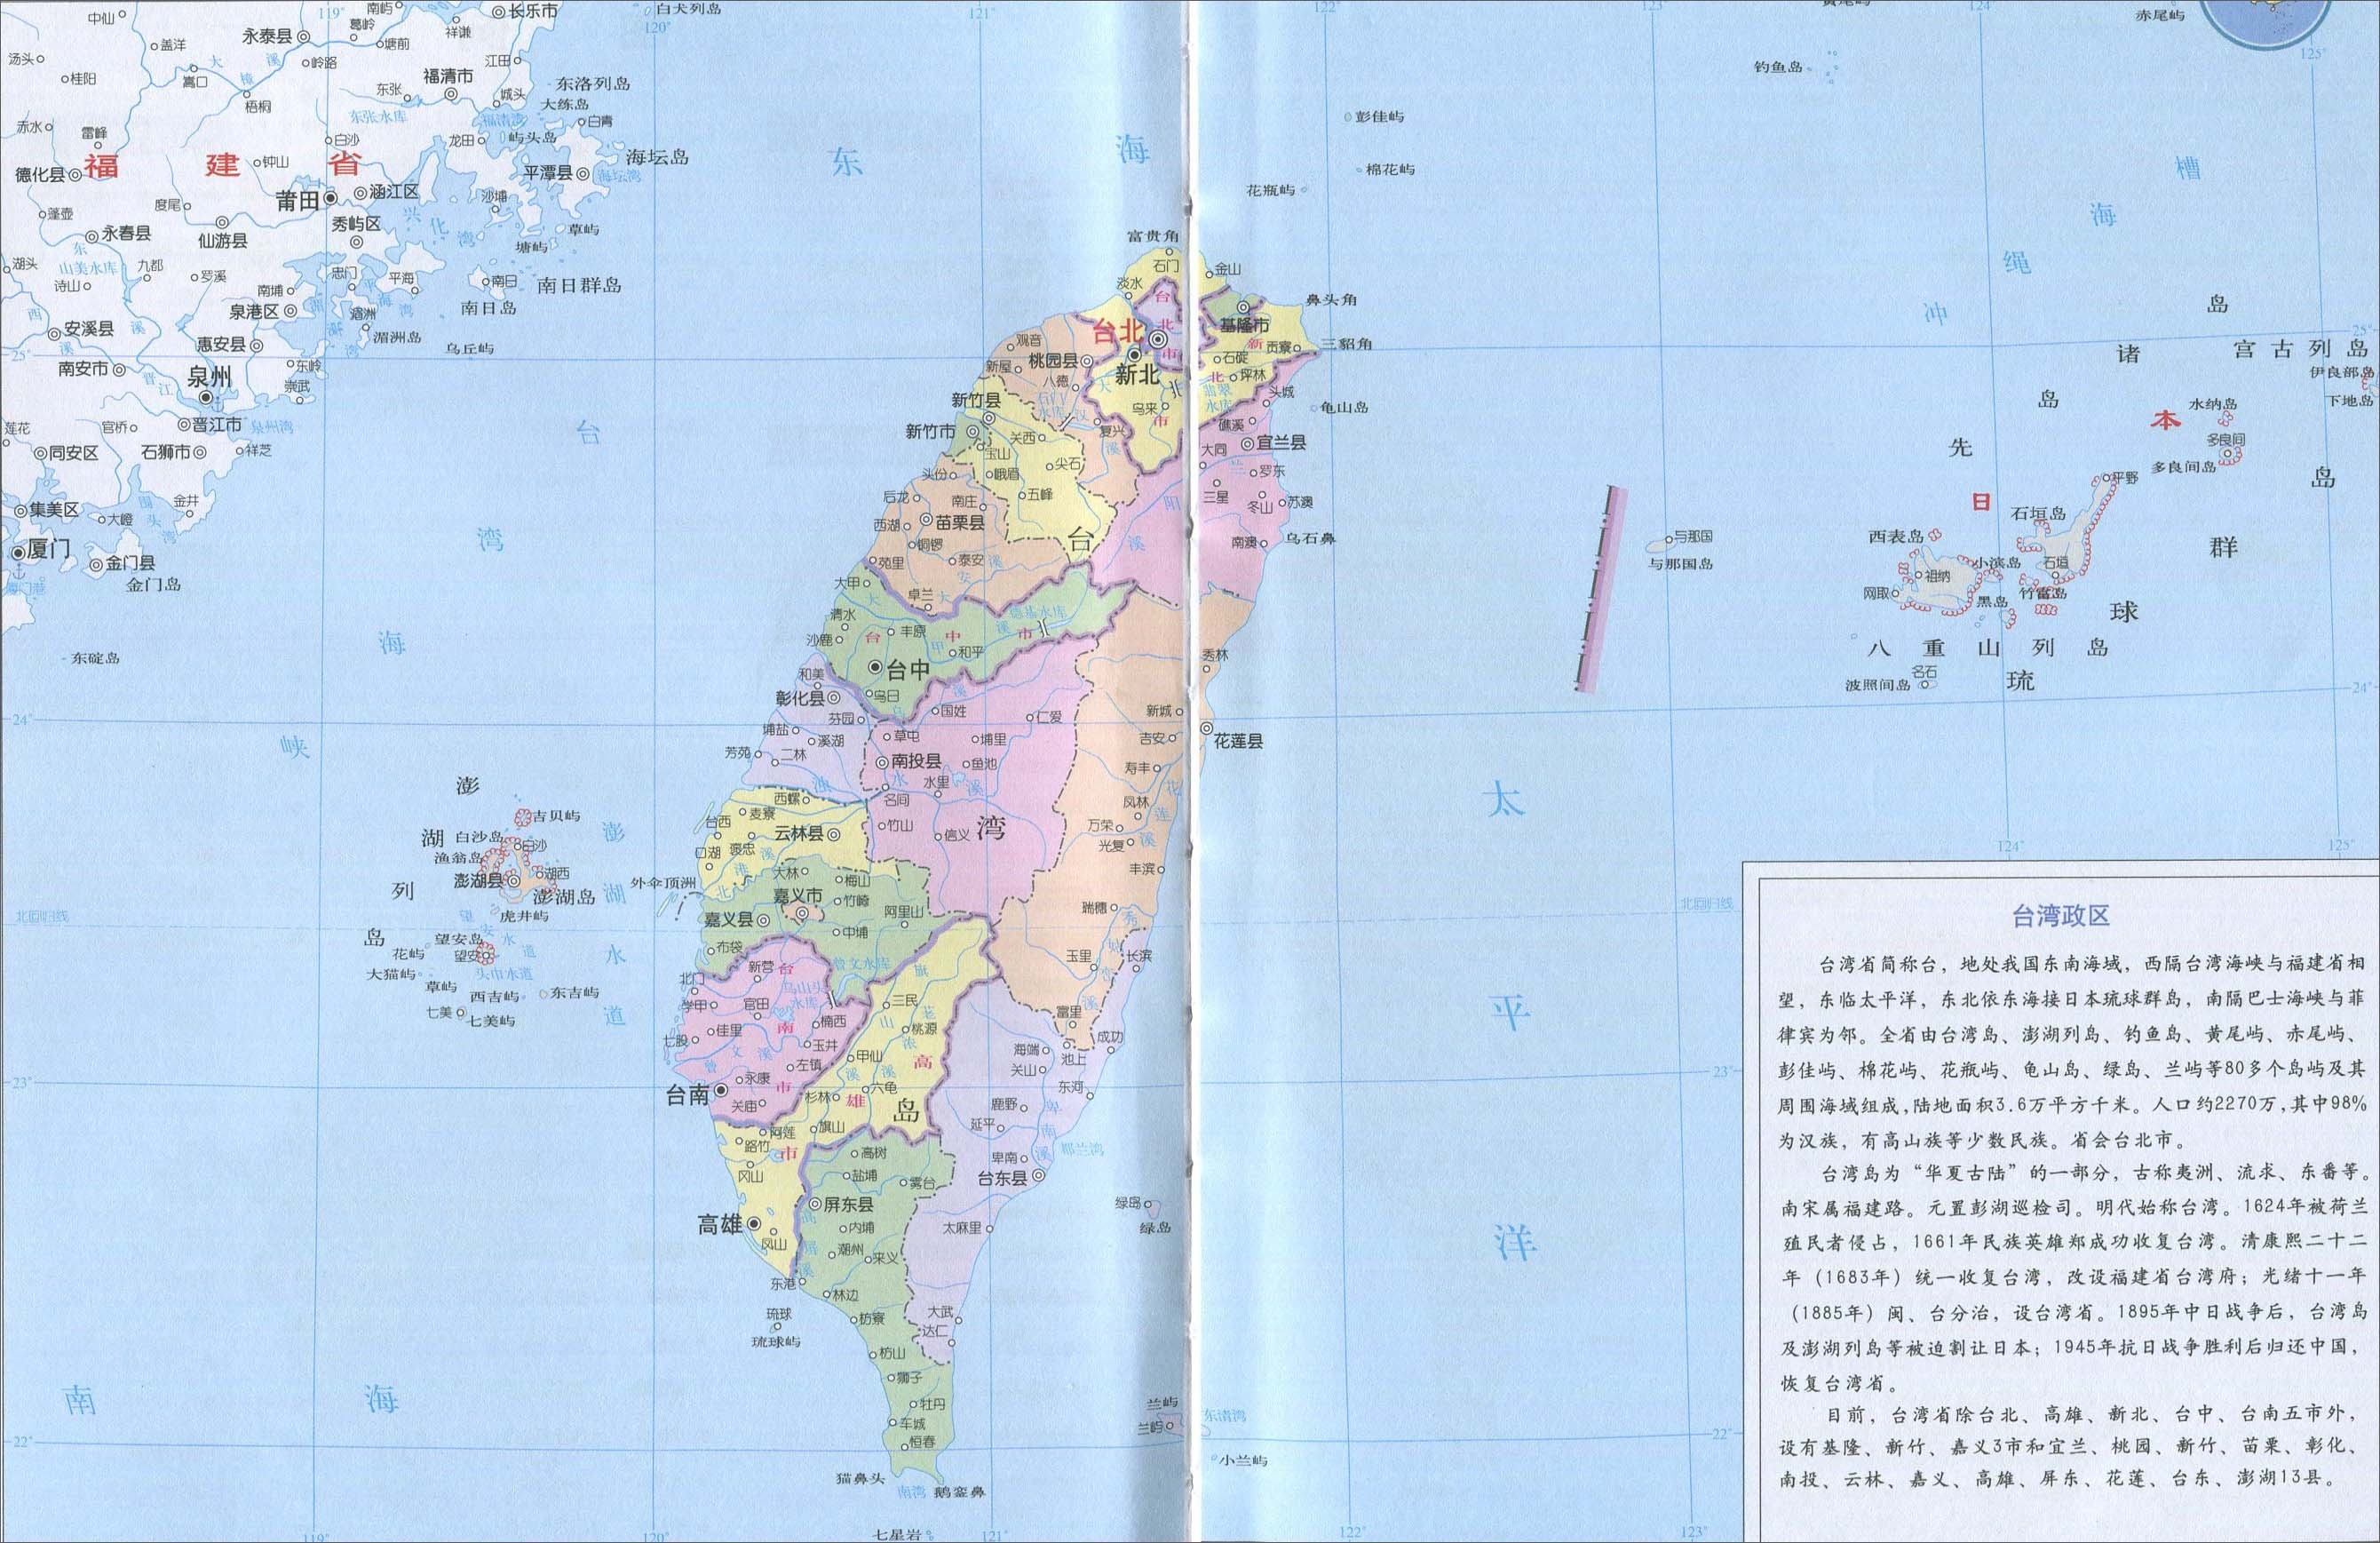 岛屿 行政分类 县市名称 地位 地图 省辖市 基隆市,新竹市,嘉义市